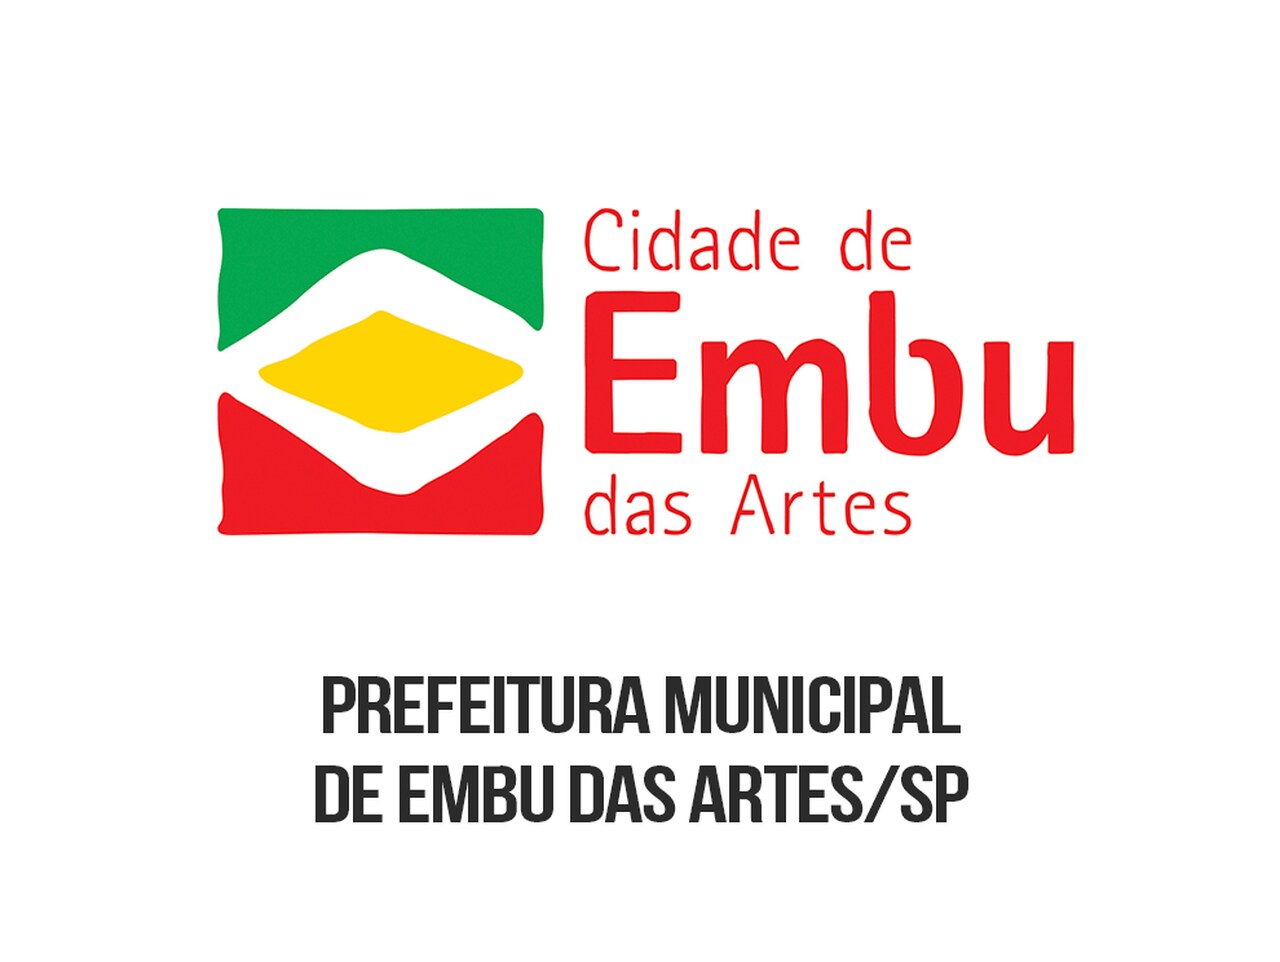 Logotipo da Prefeitura de Embu das Artes em verde, amarelo e vermelho